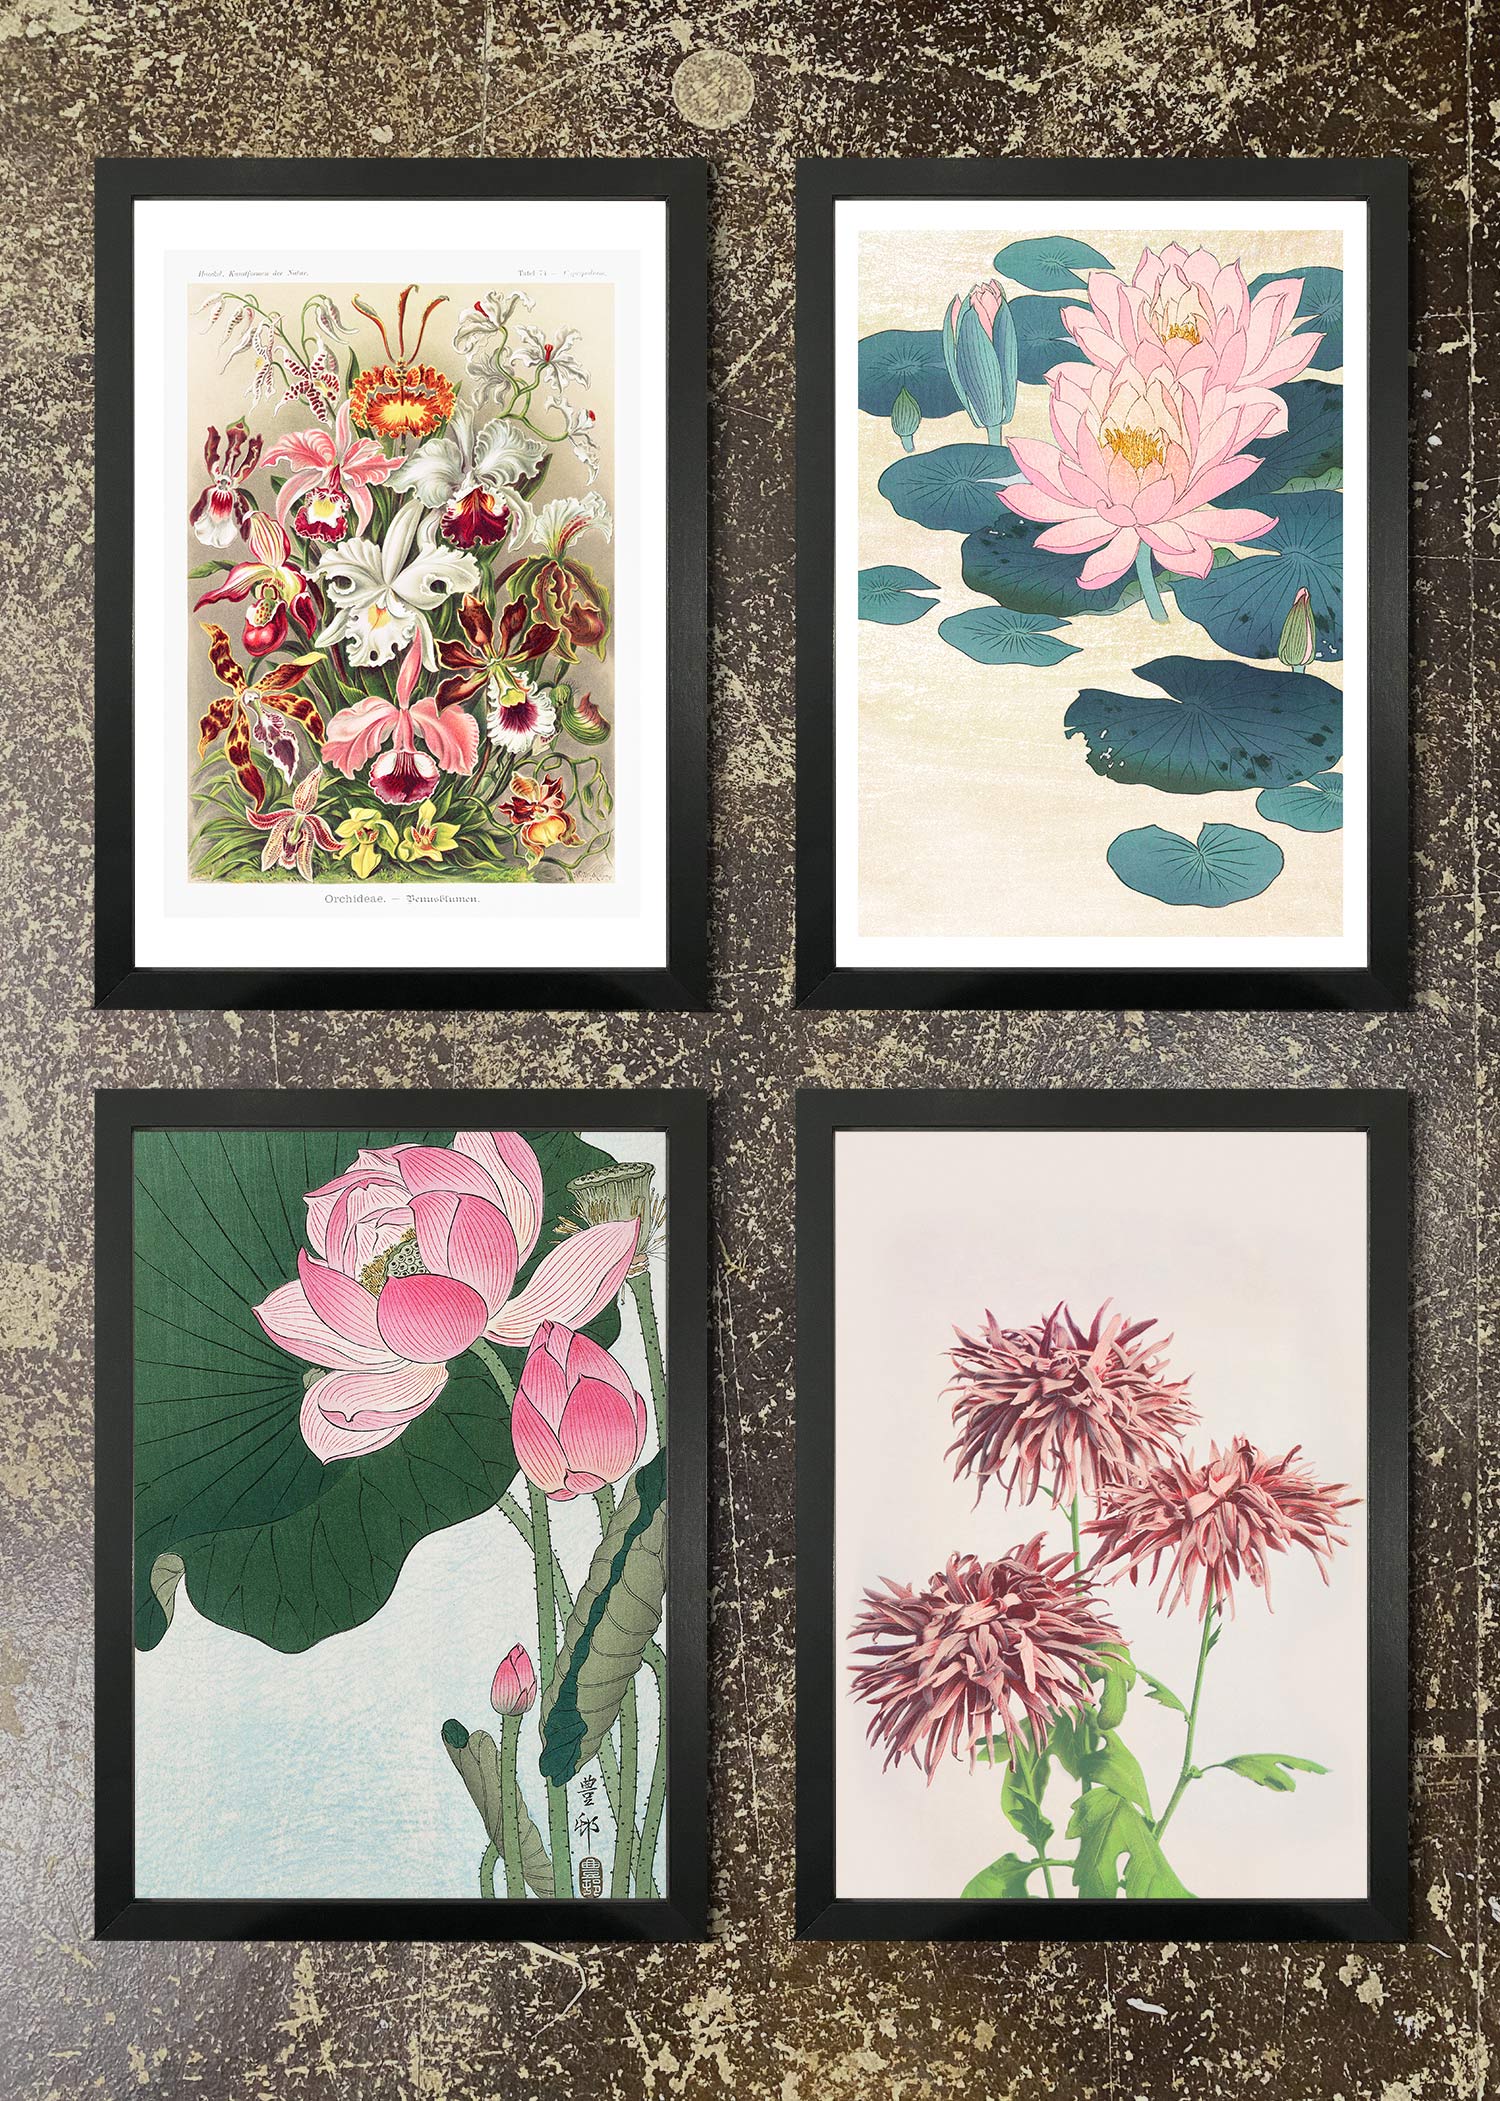 4 FRAMED 21X30CM PRINTS - Japanese Florals